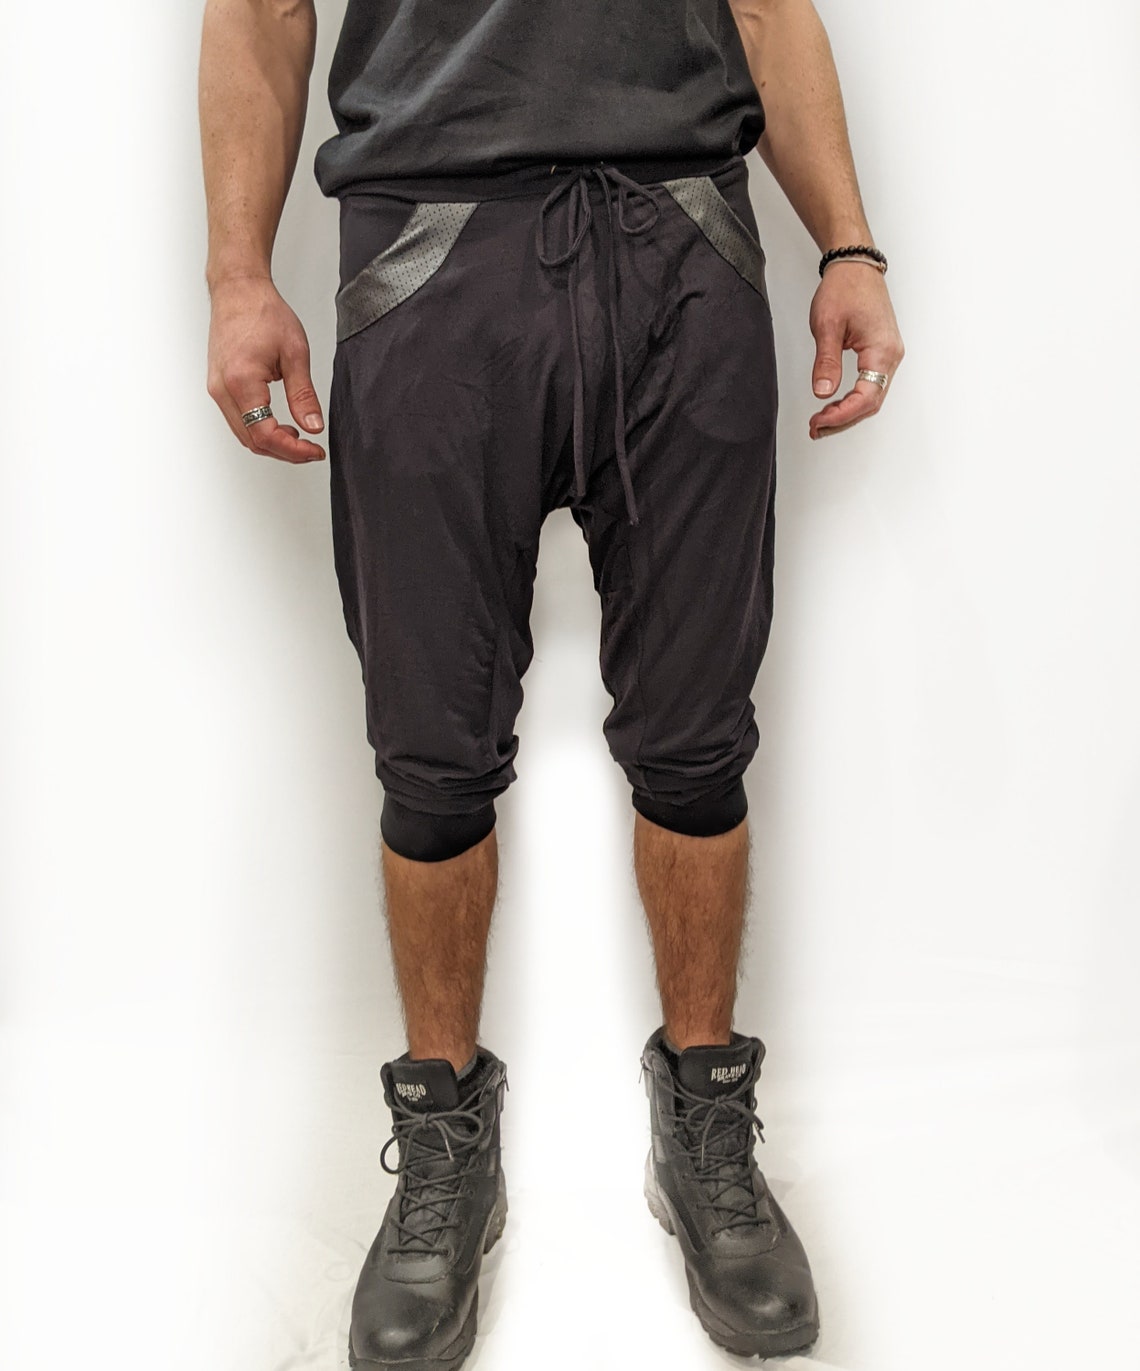 Drop crotch pants Men's pants Yuta jogger Pant hip-hop | Etsy